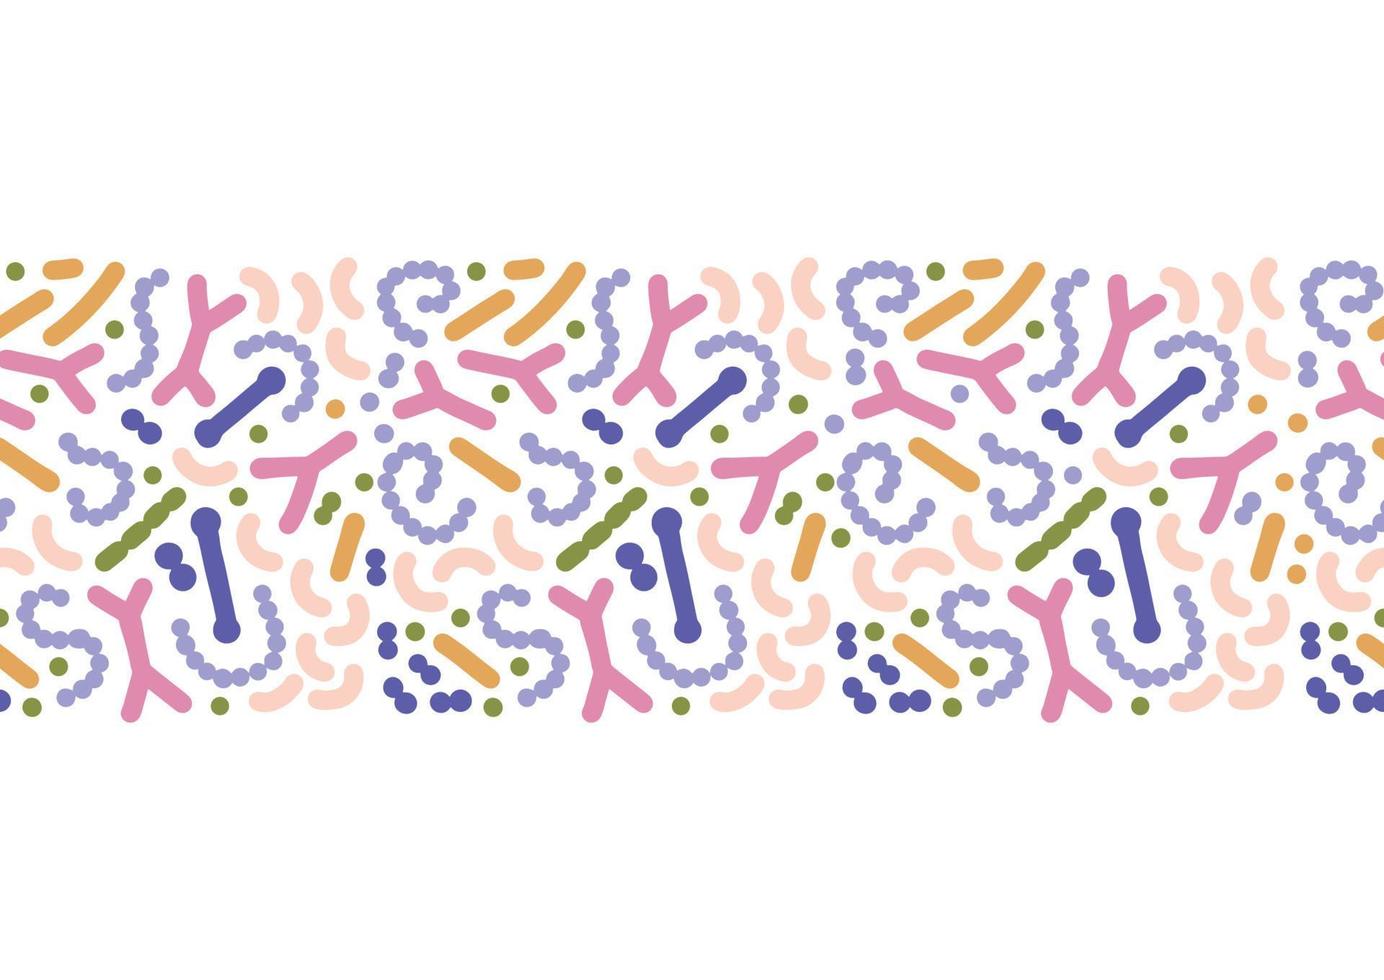 mikrobiom sömlös kant. probiotiska bakterietryck med färgglada laktobacillus, bifidobakterier, acidophilus. platt handritad biologi illustration. vektor